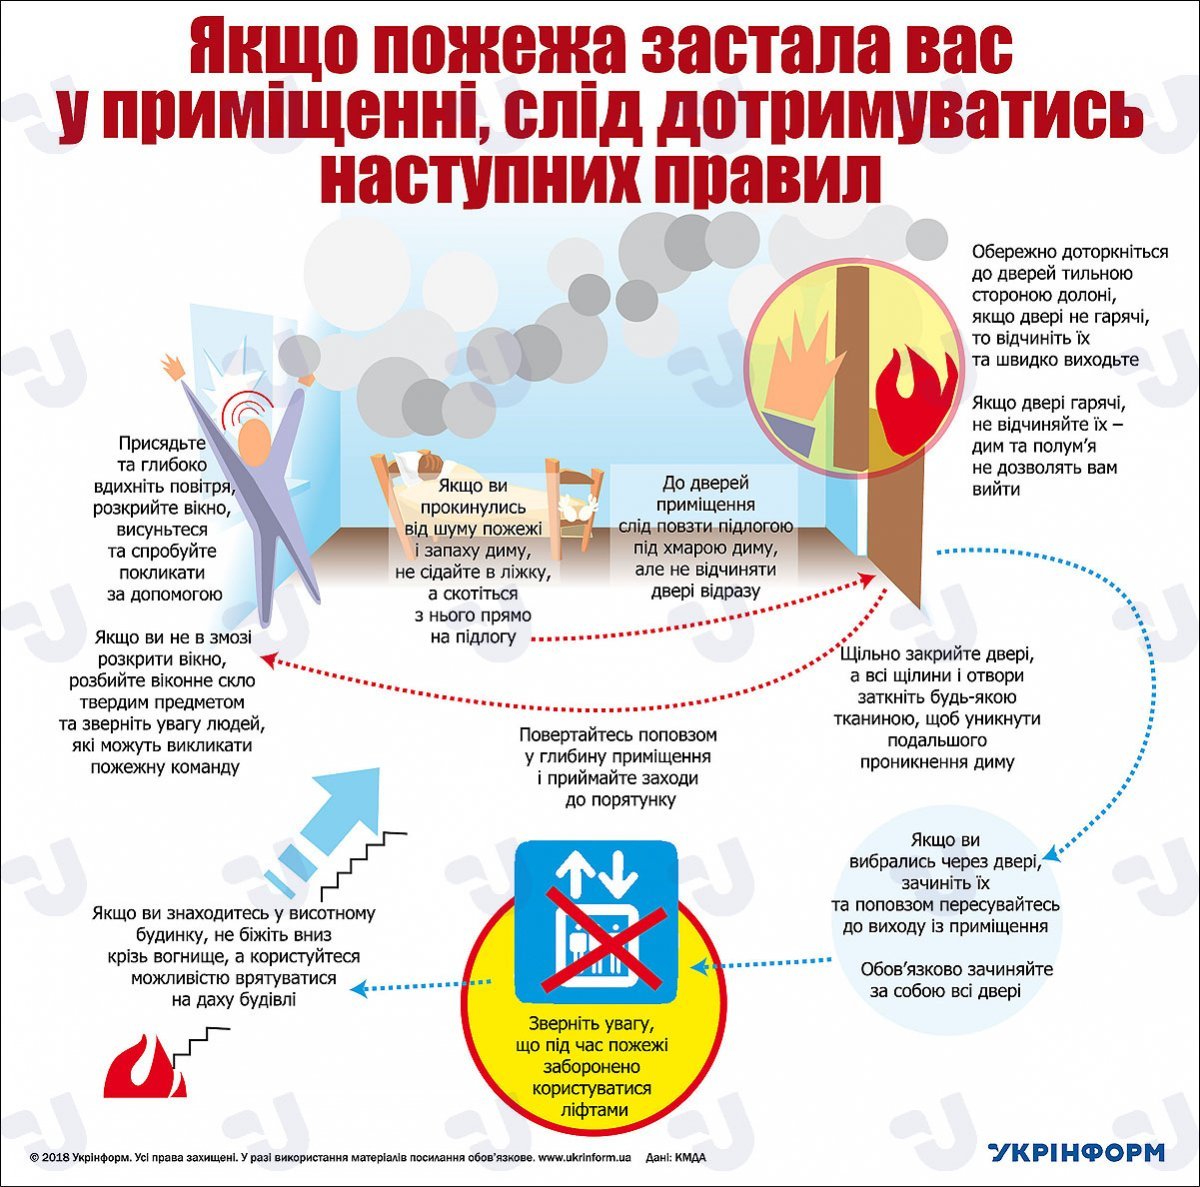 Инфографика: "Укринформ"